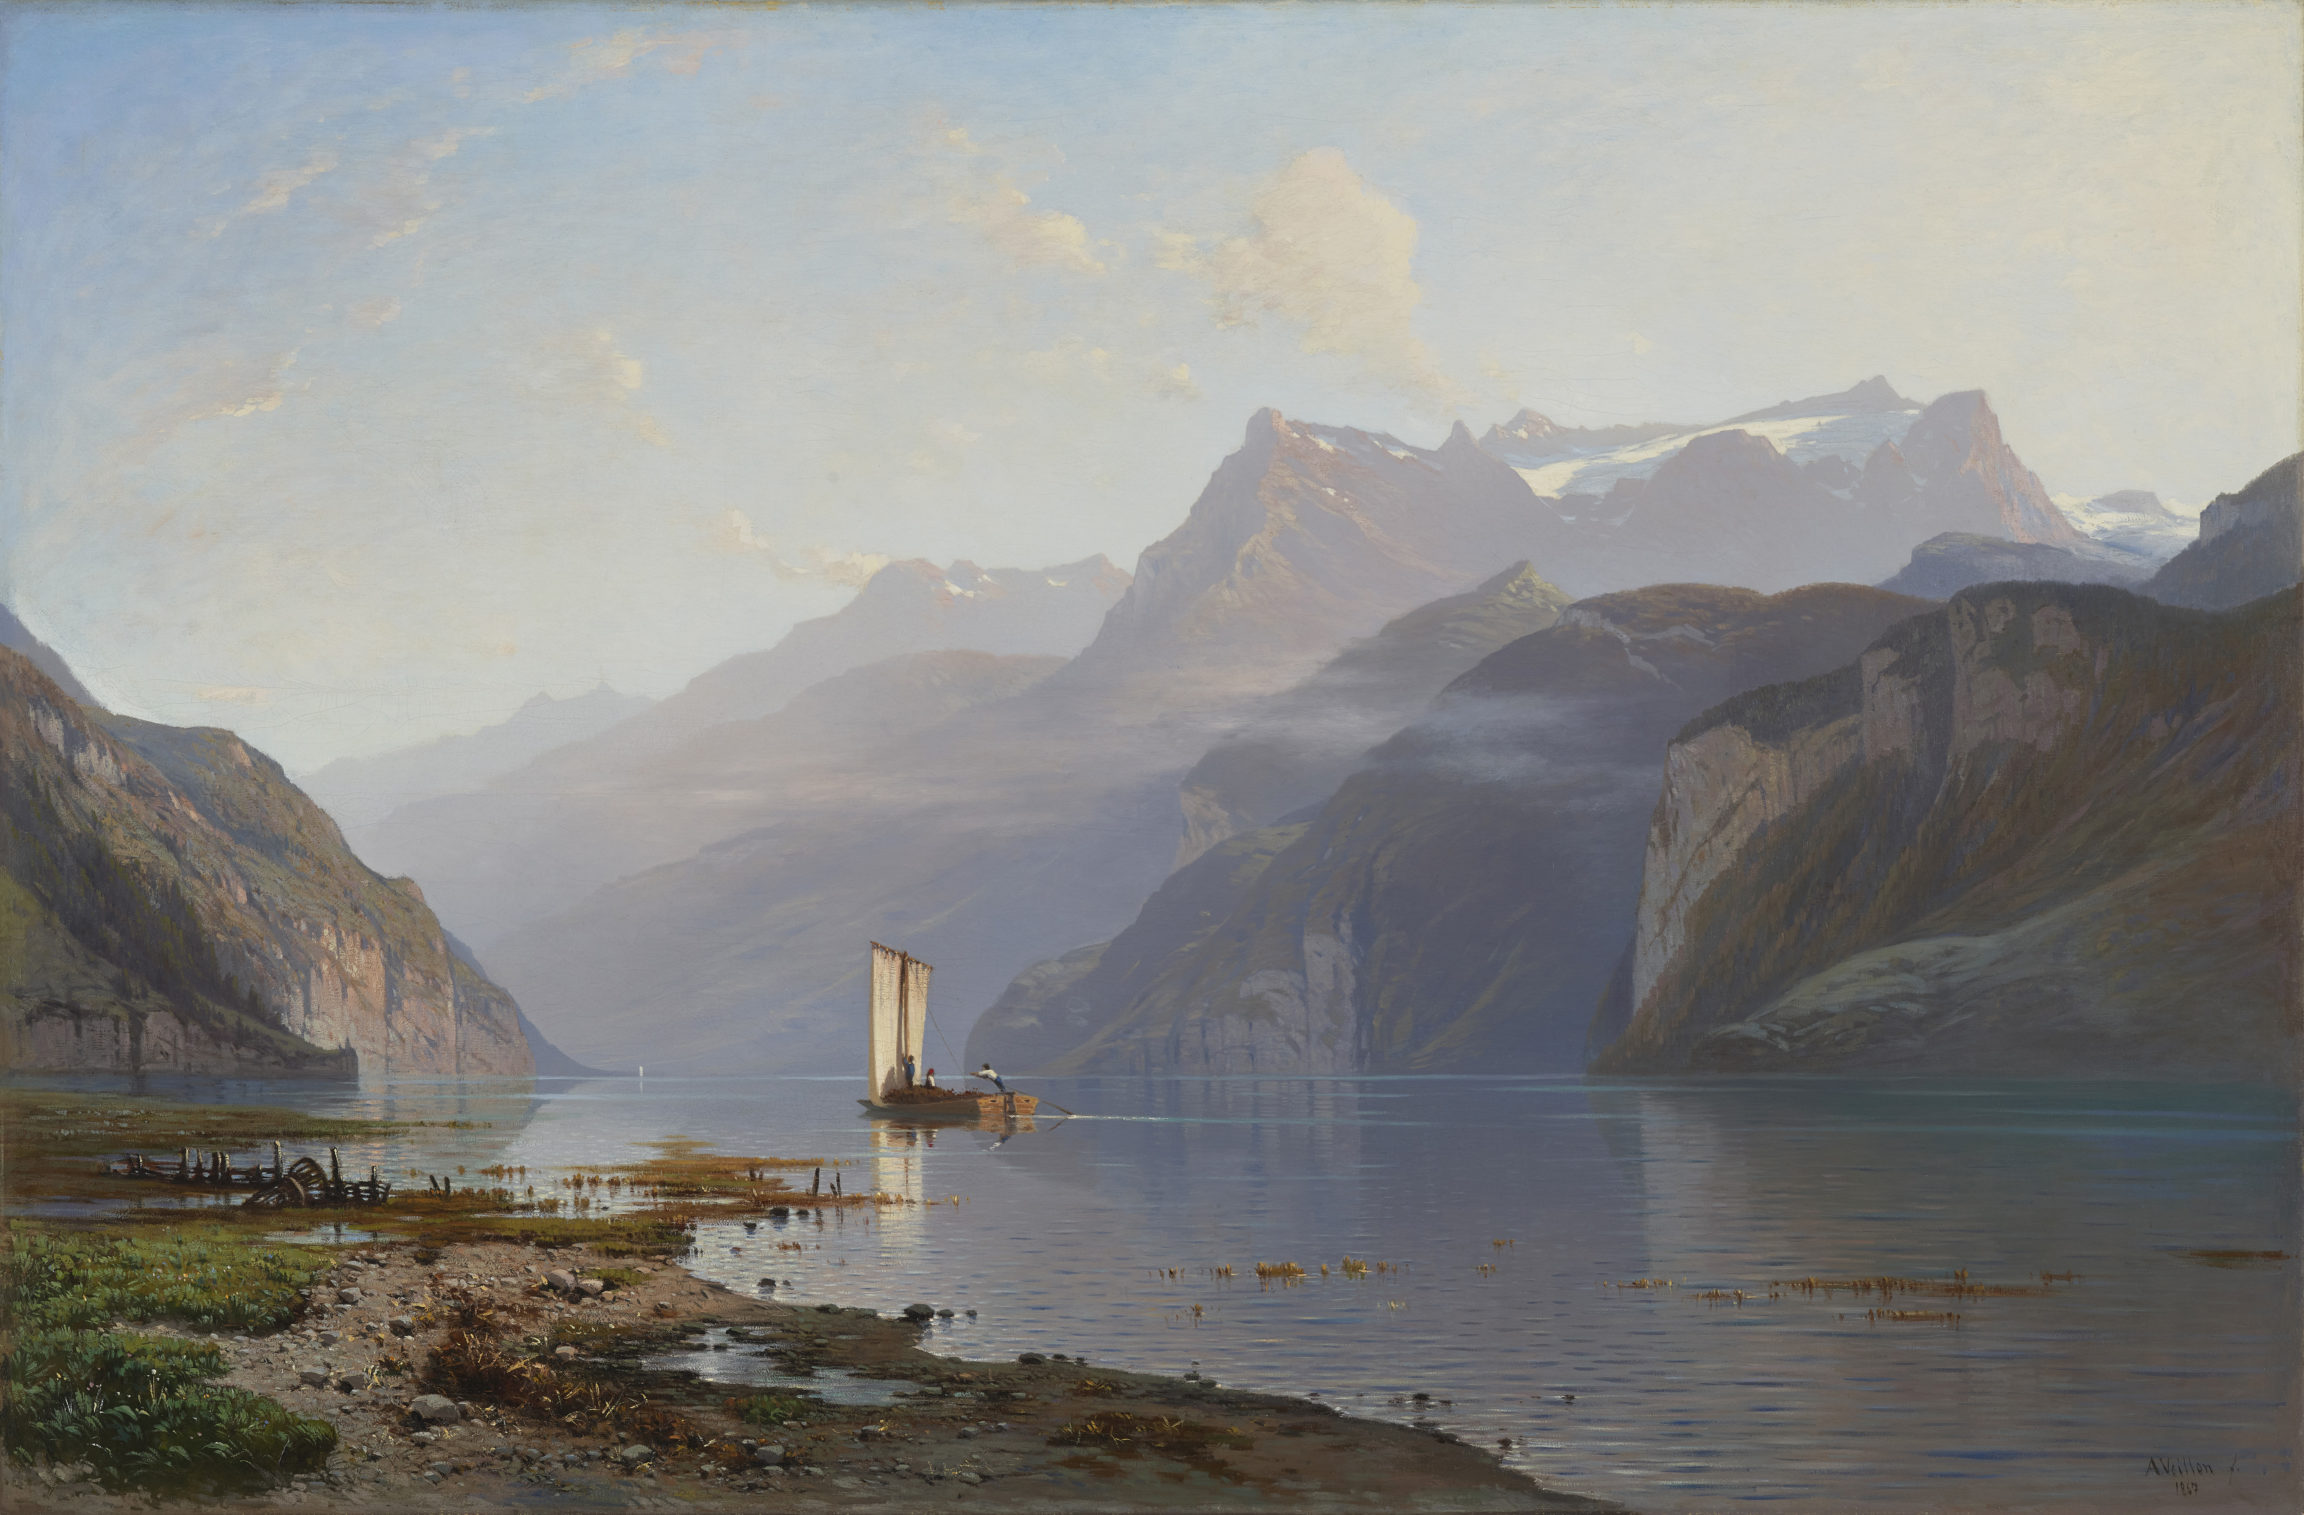 Auguste Veillon, Un soir à Brunnen (Brunnen, Evening), 1867